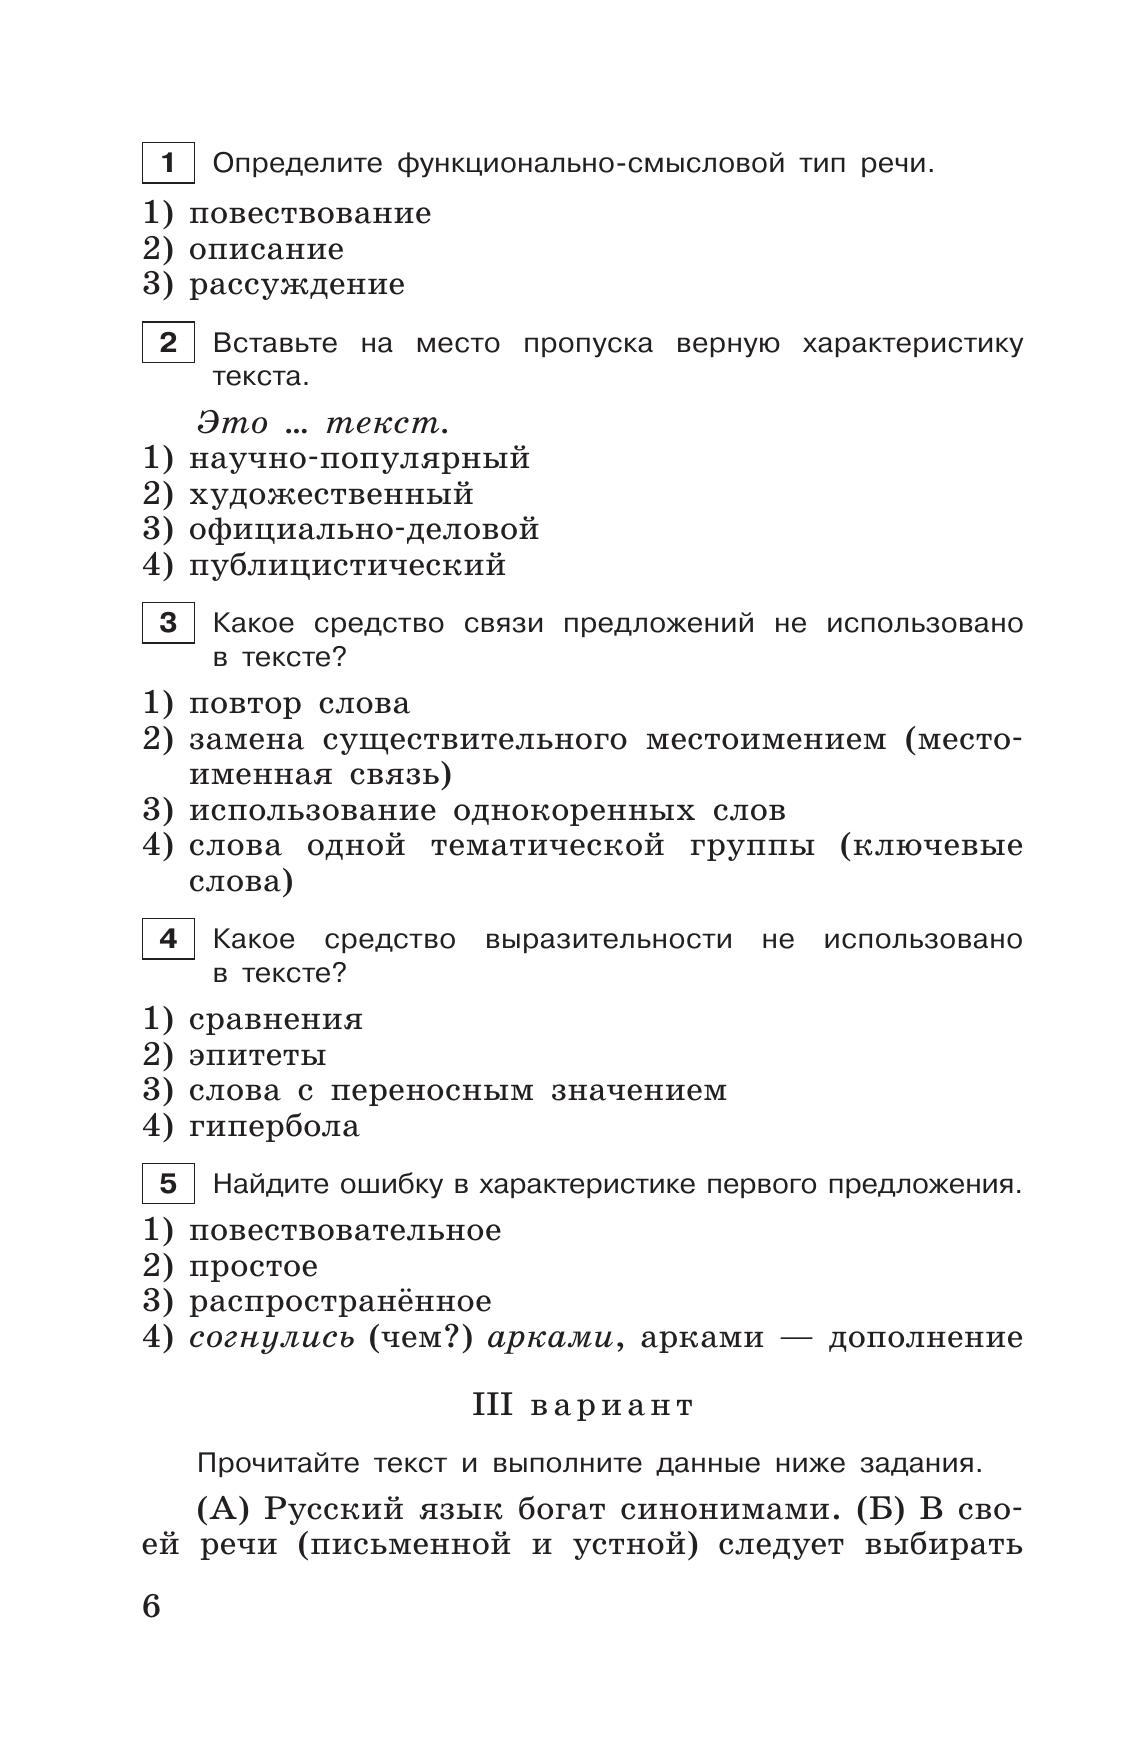 Тестовые задания по русскому языку. 6 класс. 8